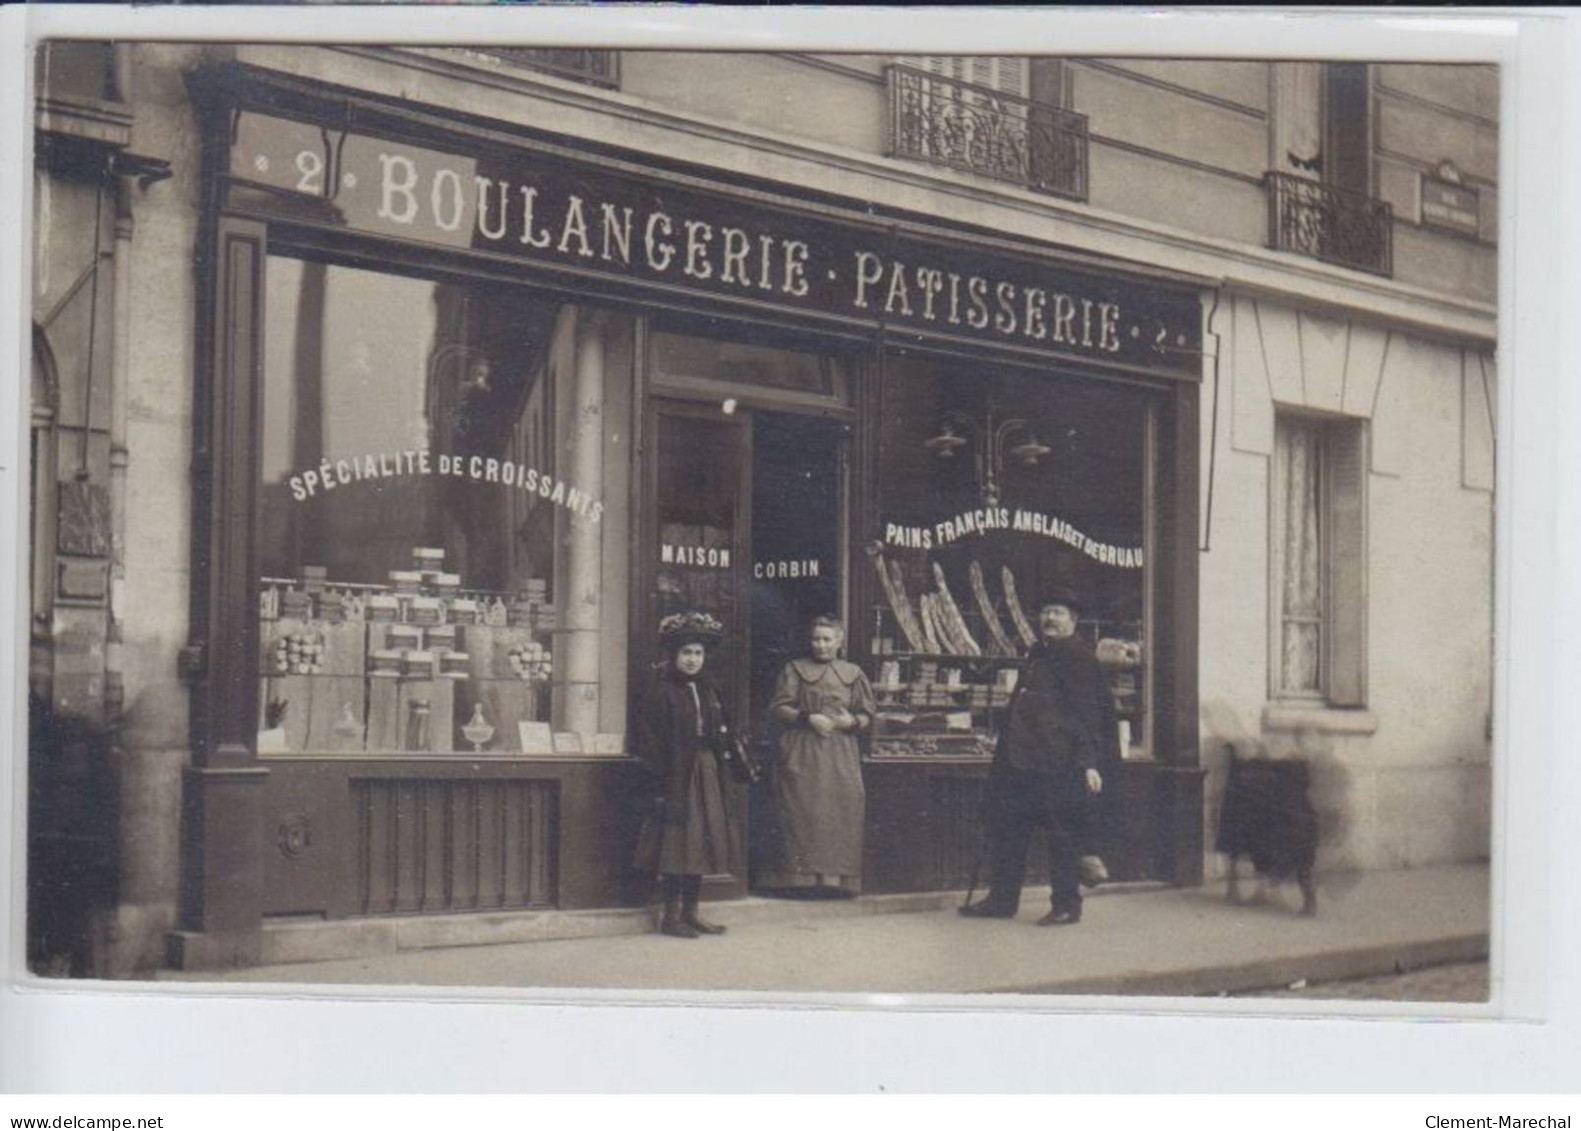 FRANCE: Boulangerie Patisserie, Spécialité De Croissants, Maison Corbin, Pains Français Anglais De Gruau - Très Bon état - Photos